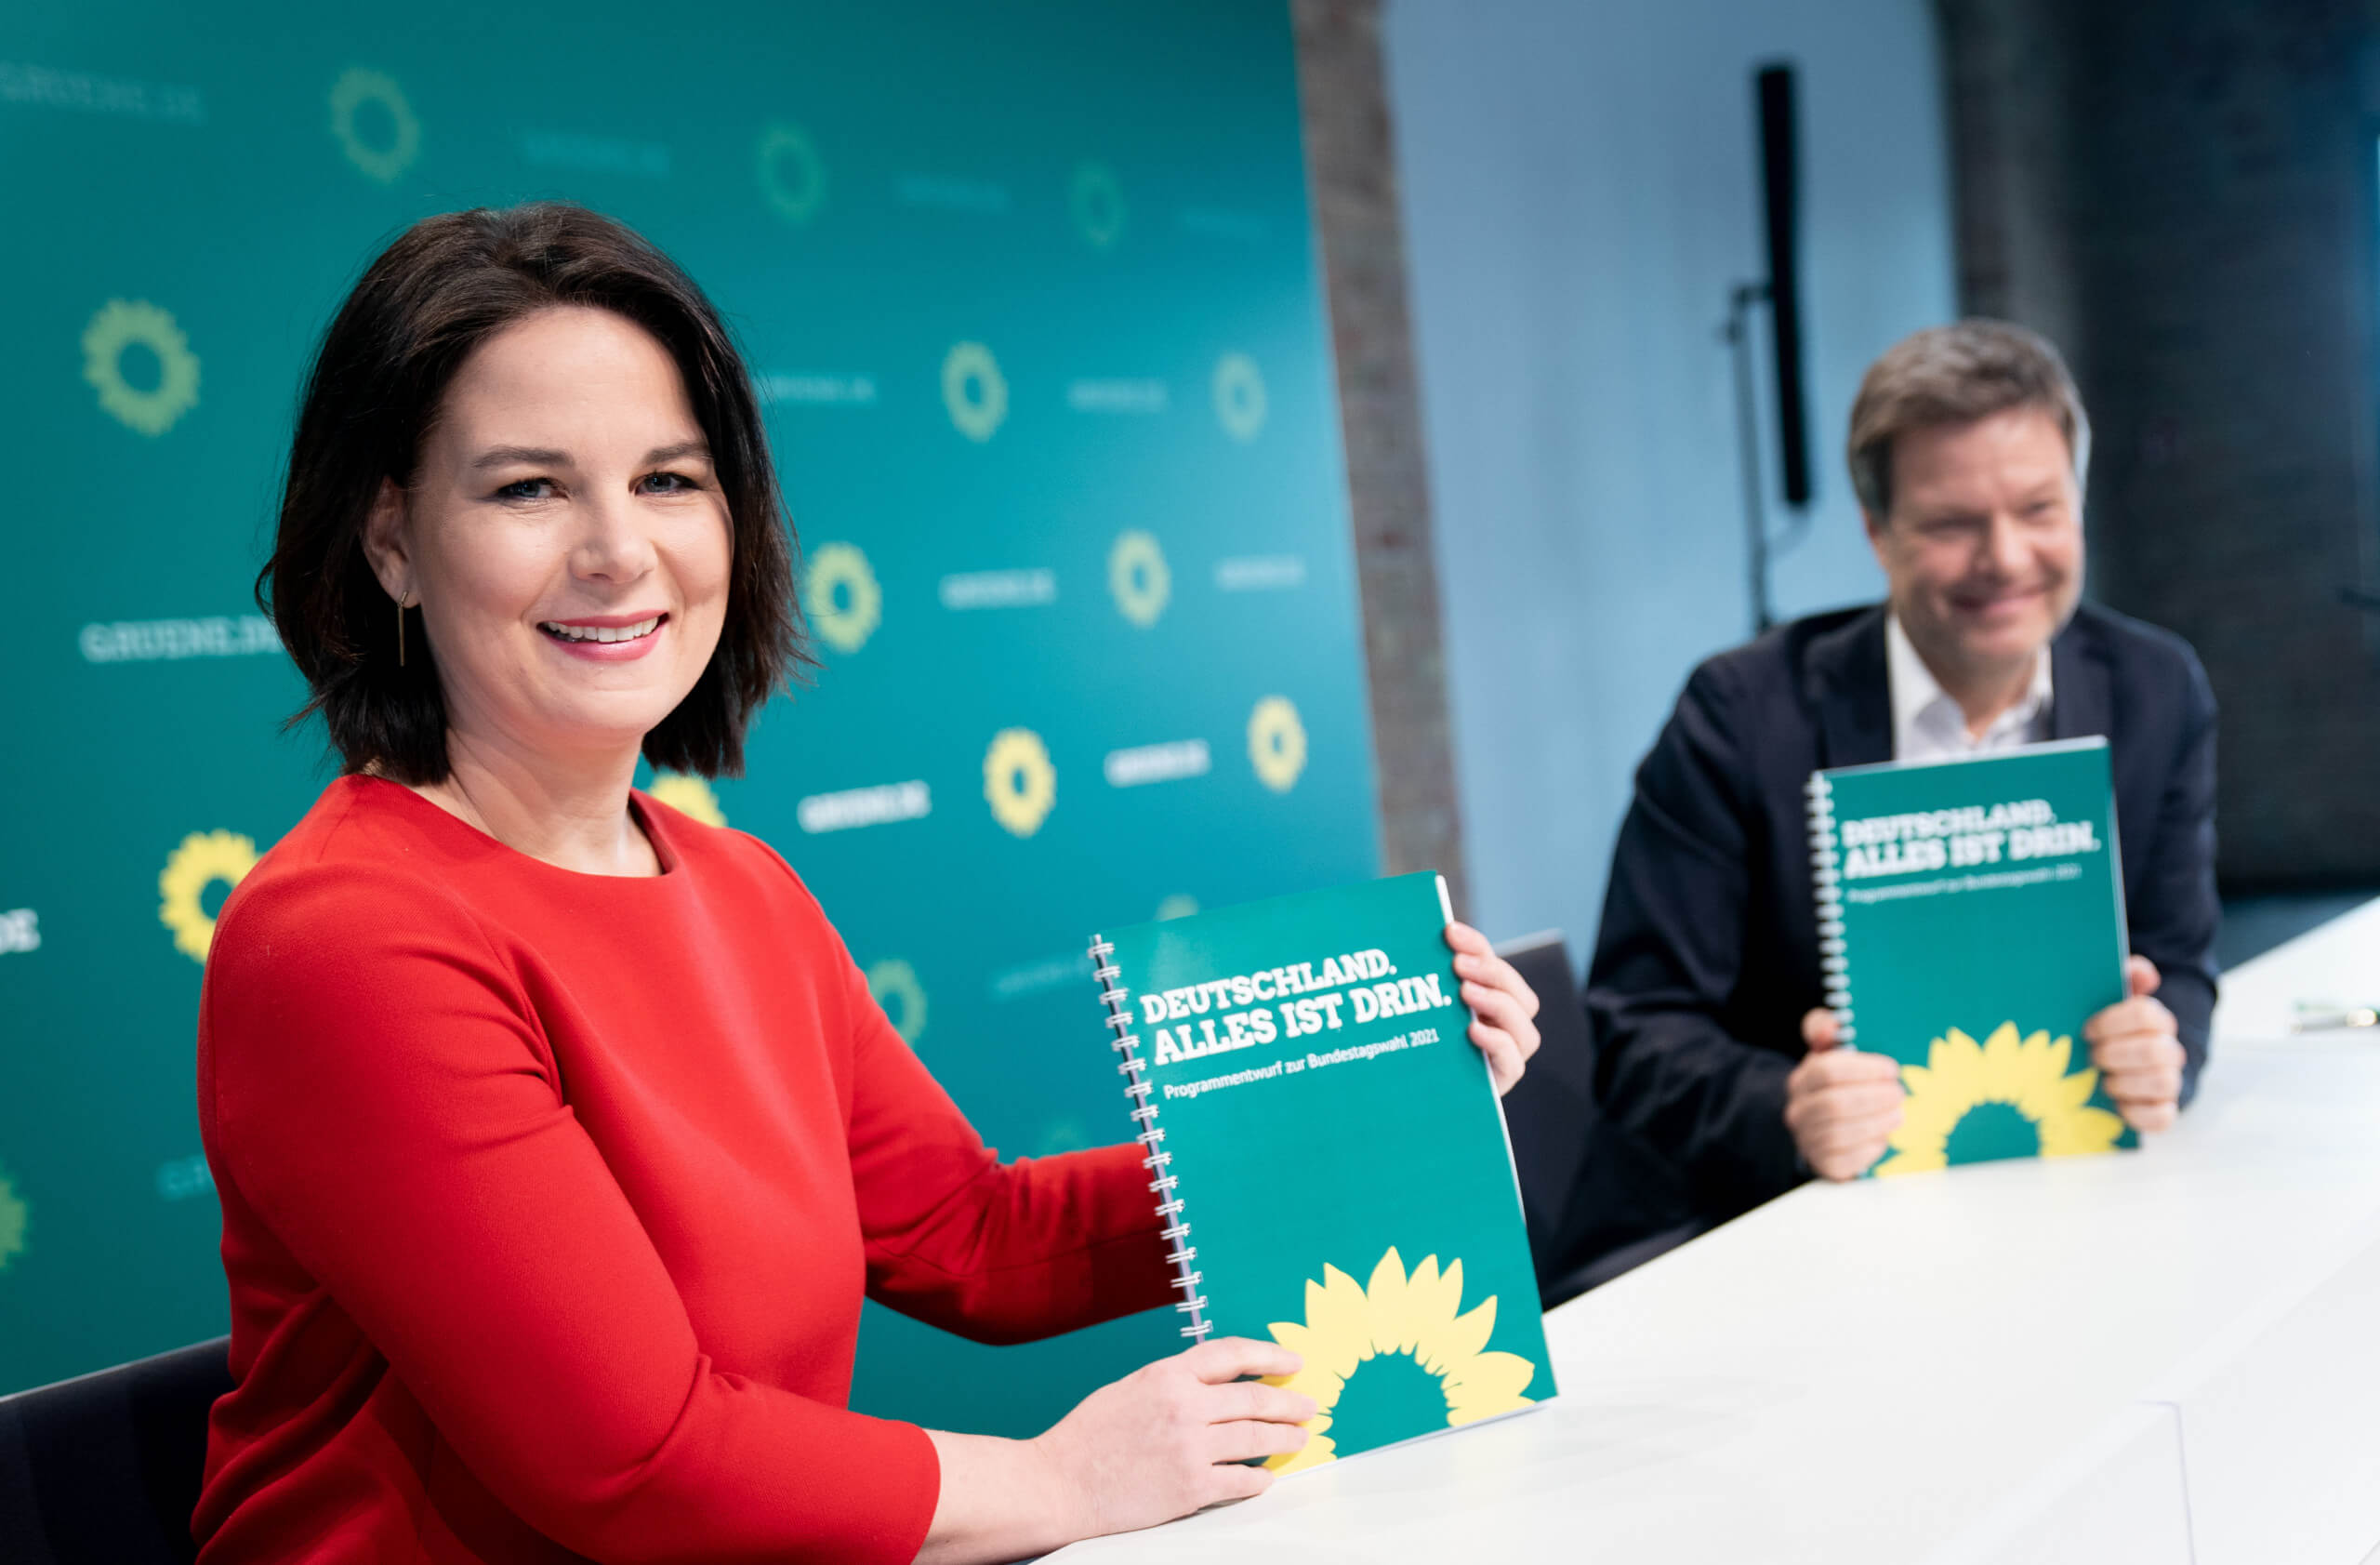 Auf Facebook werden falsche und unbelegte Behauptungen über das Wahlprogramm der Grünen verbreitet. (Quelle: Picture Alliance/ DPA/ Kay Nietfeld)